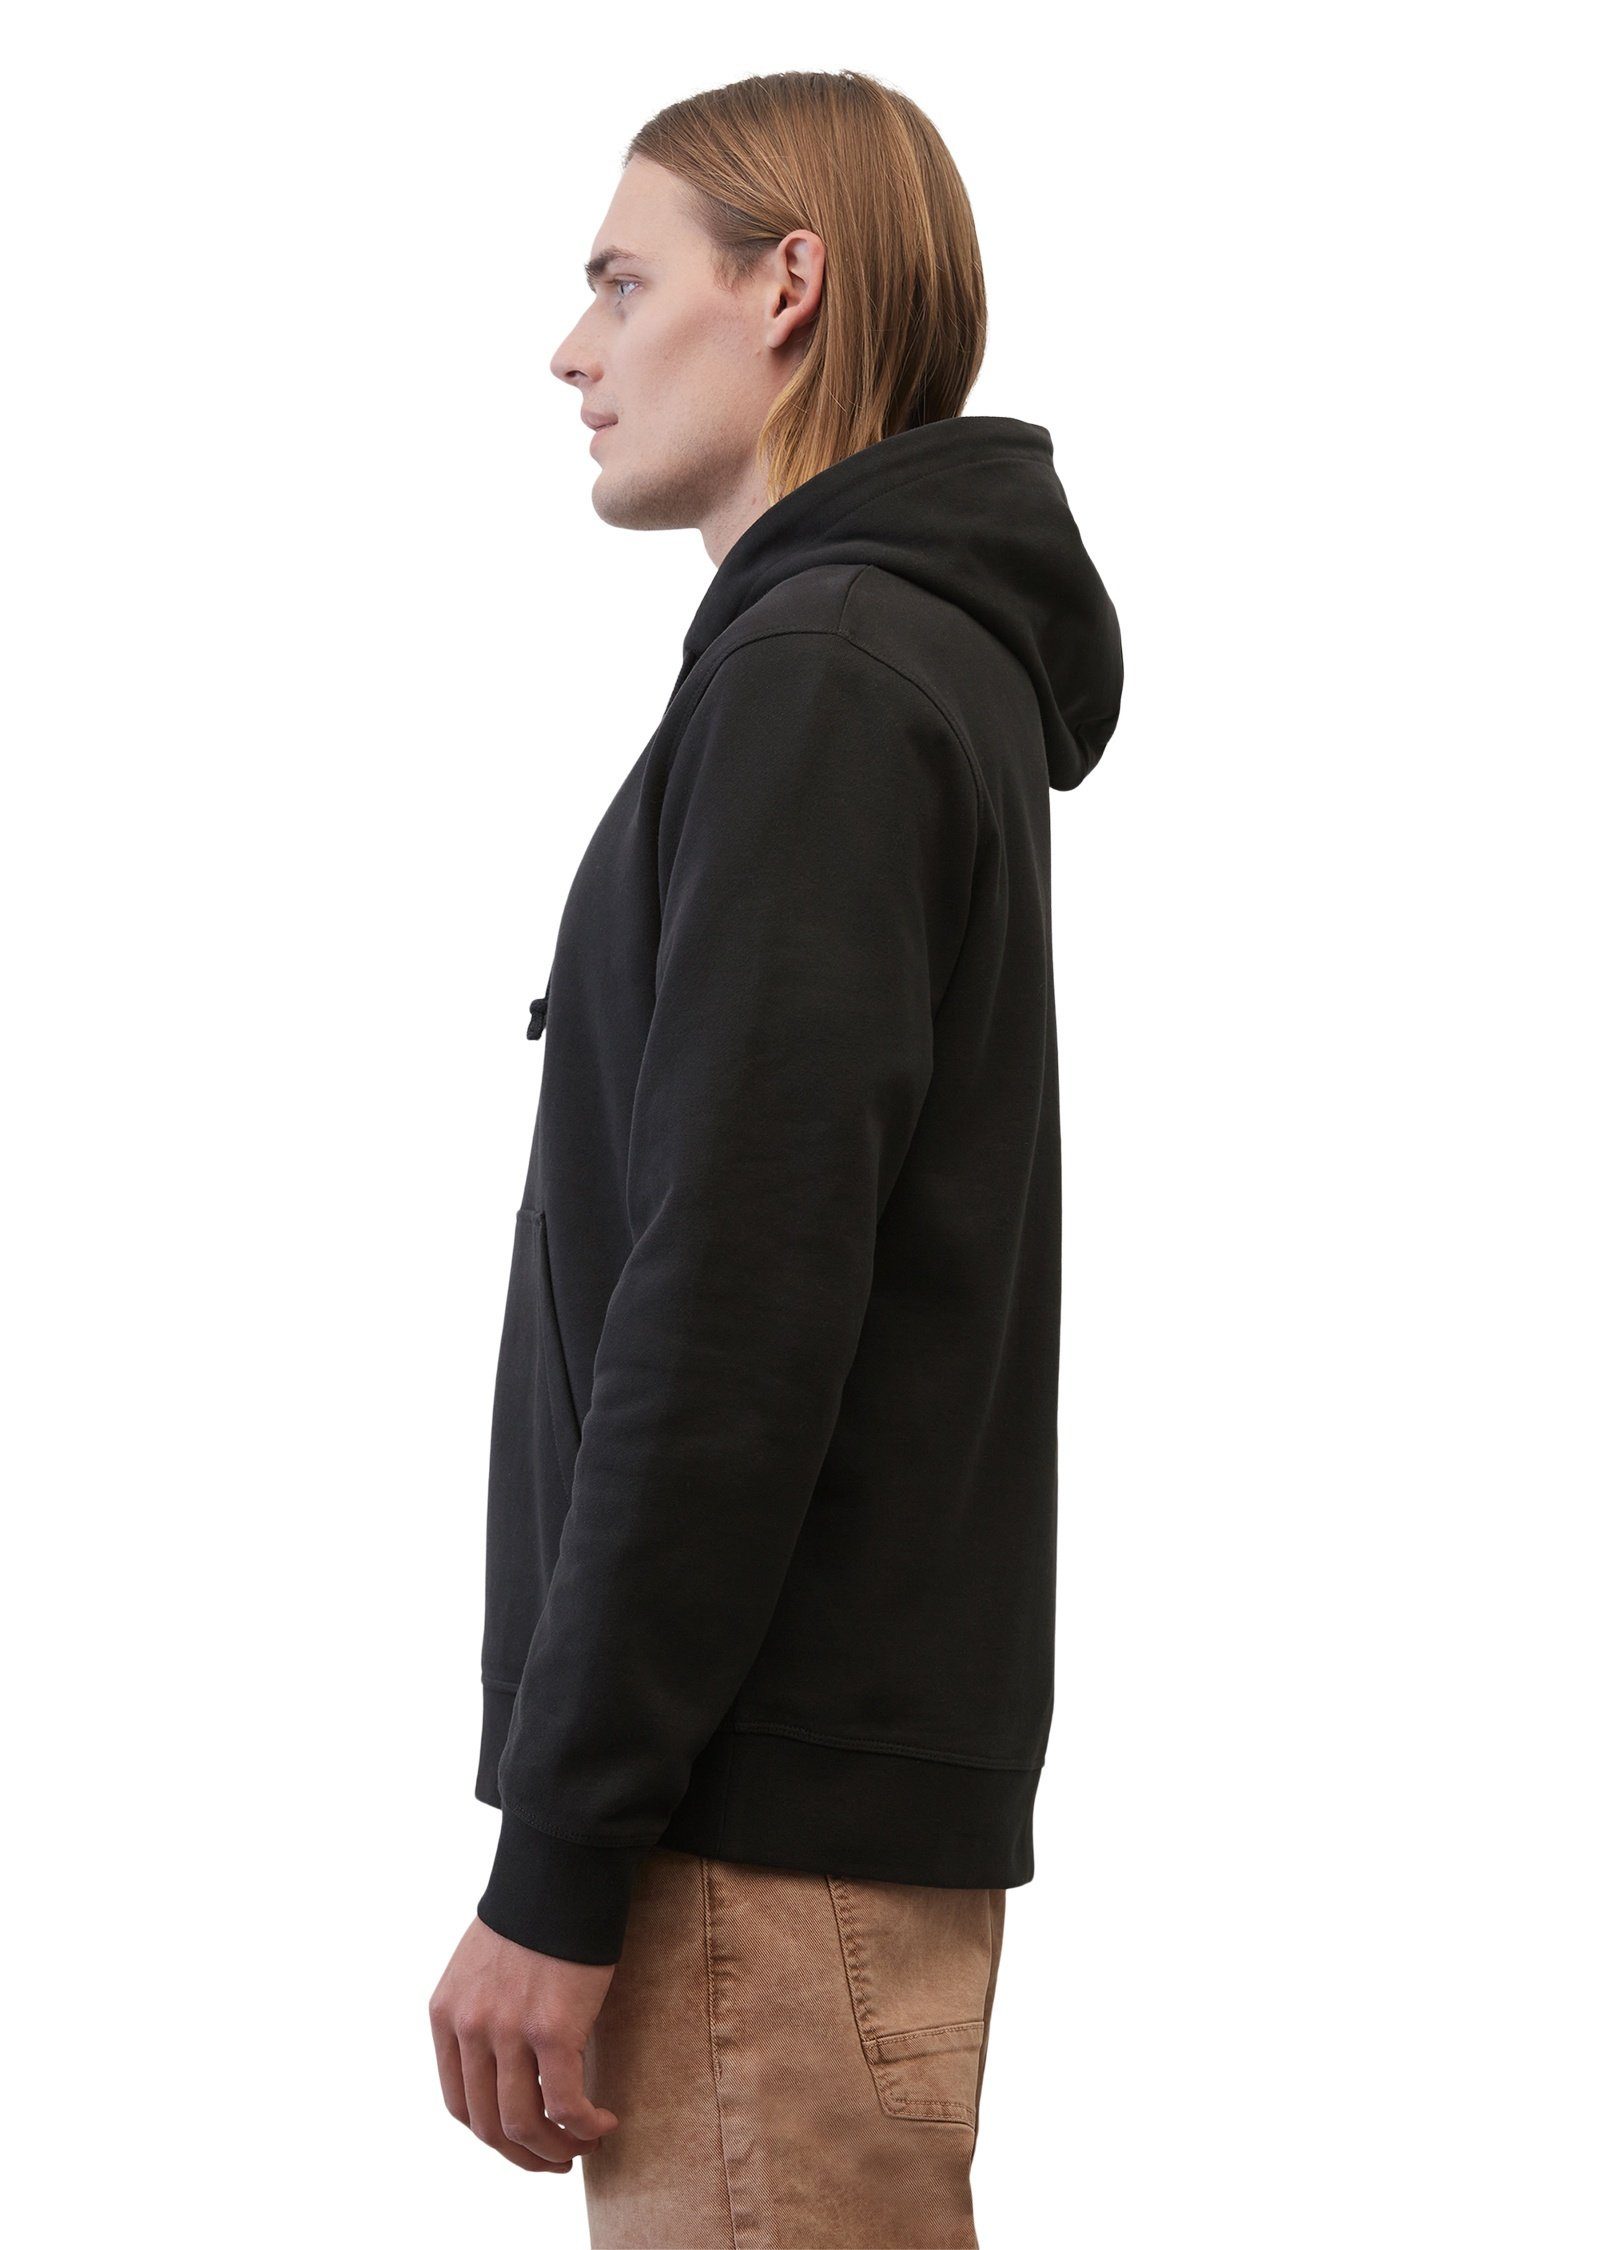 Marc reiner Bio-Baumwolle Sweatshirt schwarz O'Polo aus